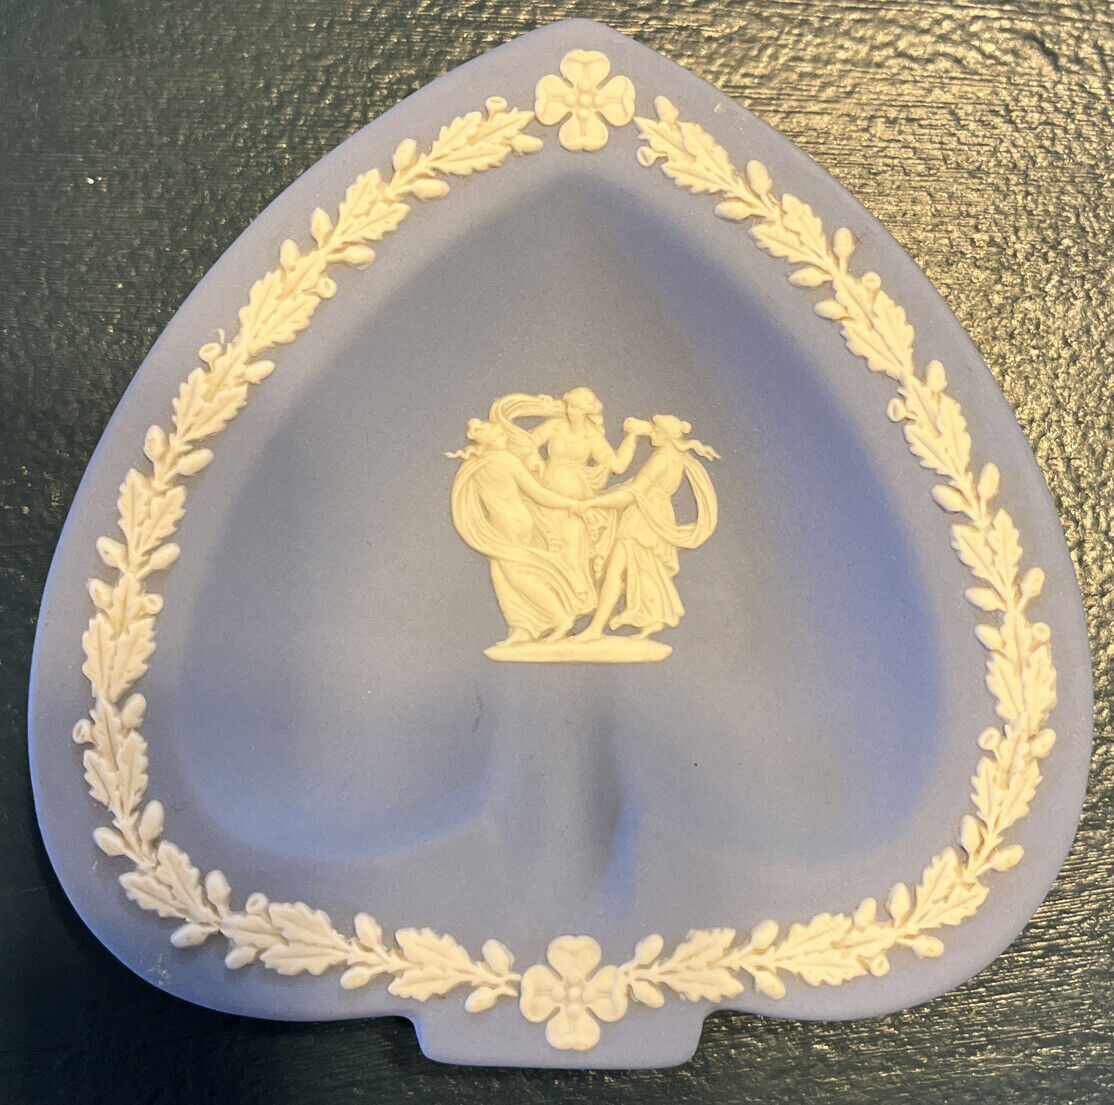 LOOK Wedgwood Jasperware Spade Shaped Blue Ivory Dish 4.5” Vintage